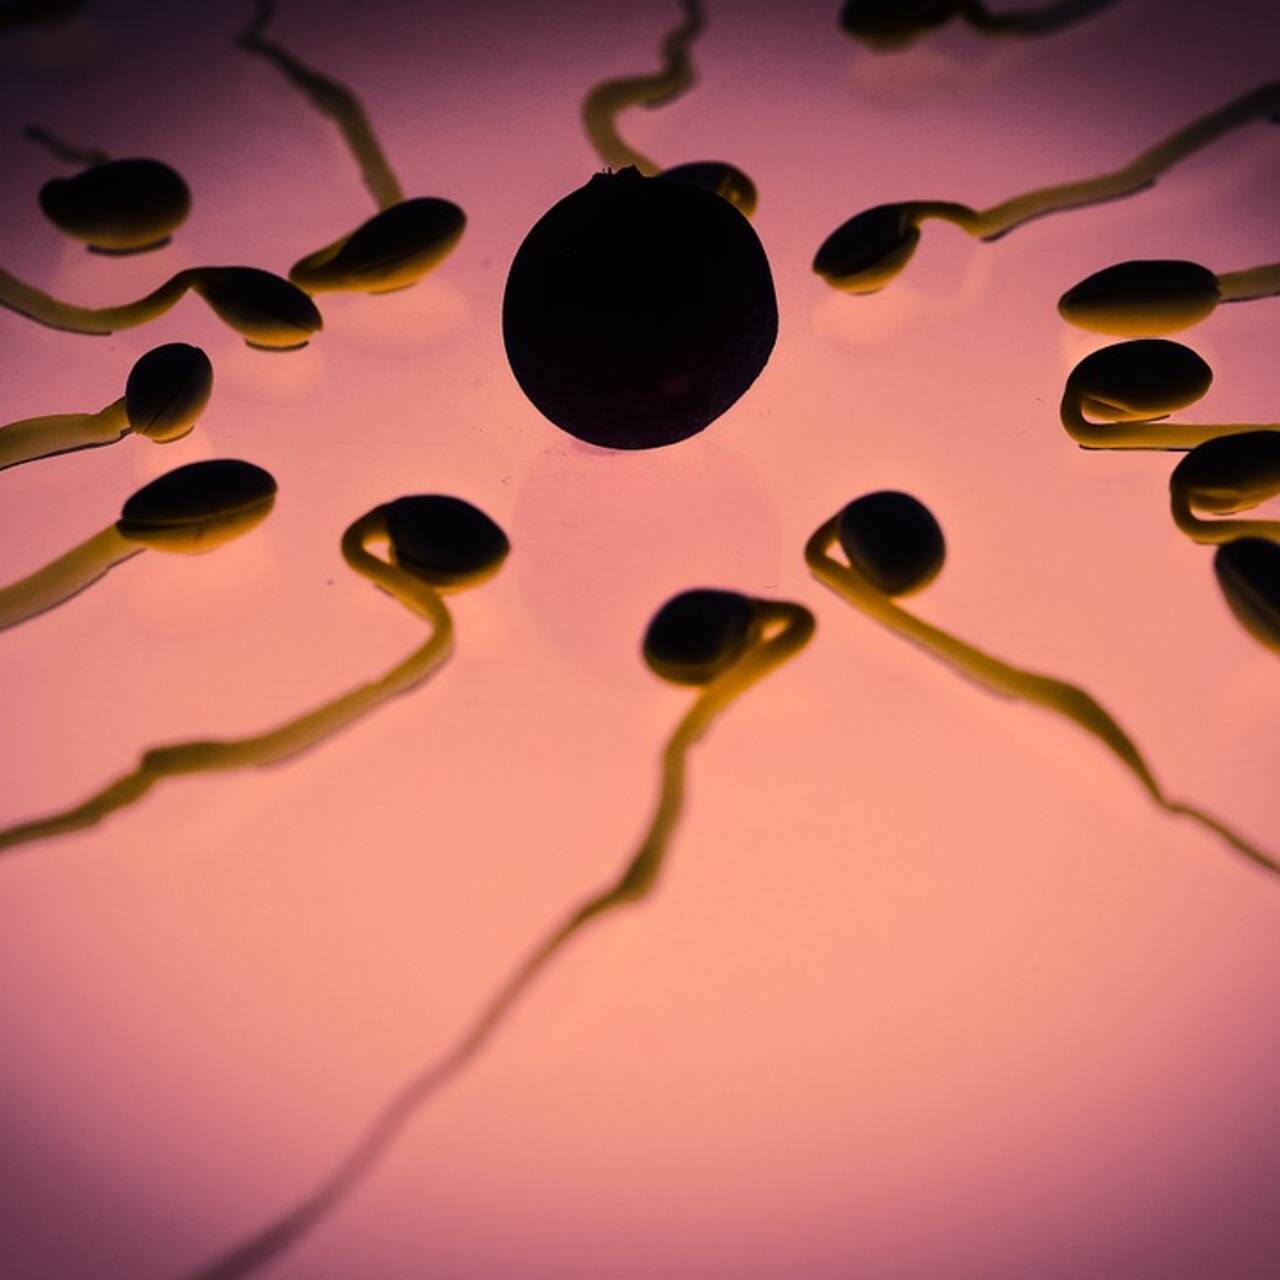 польза спермы для женского организма во в фото 89